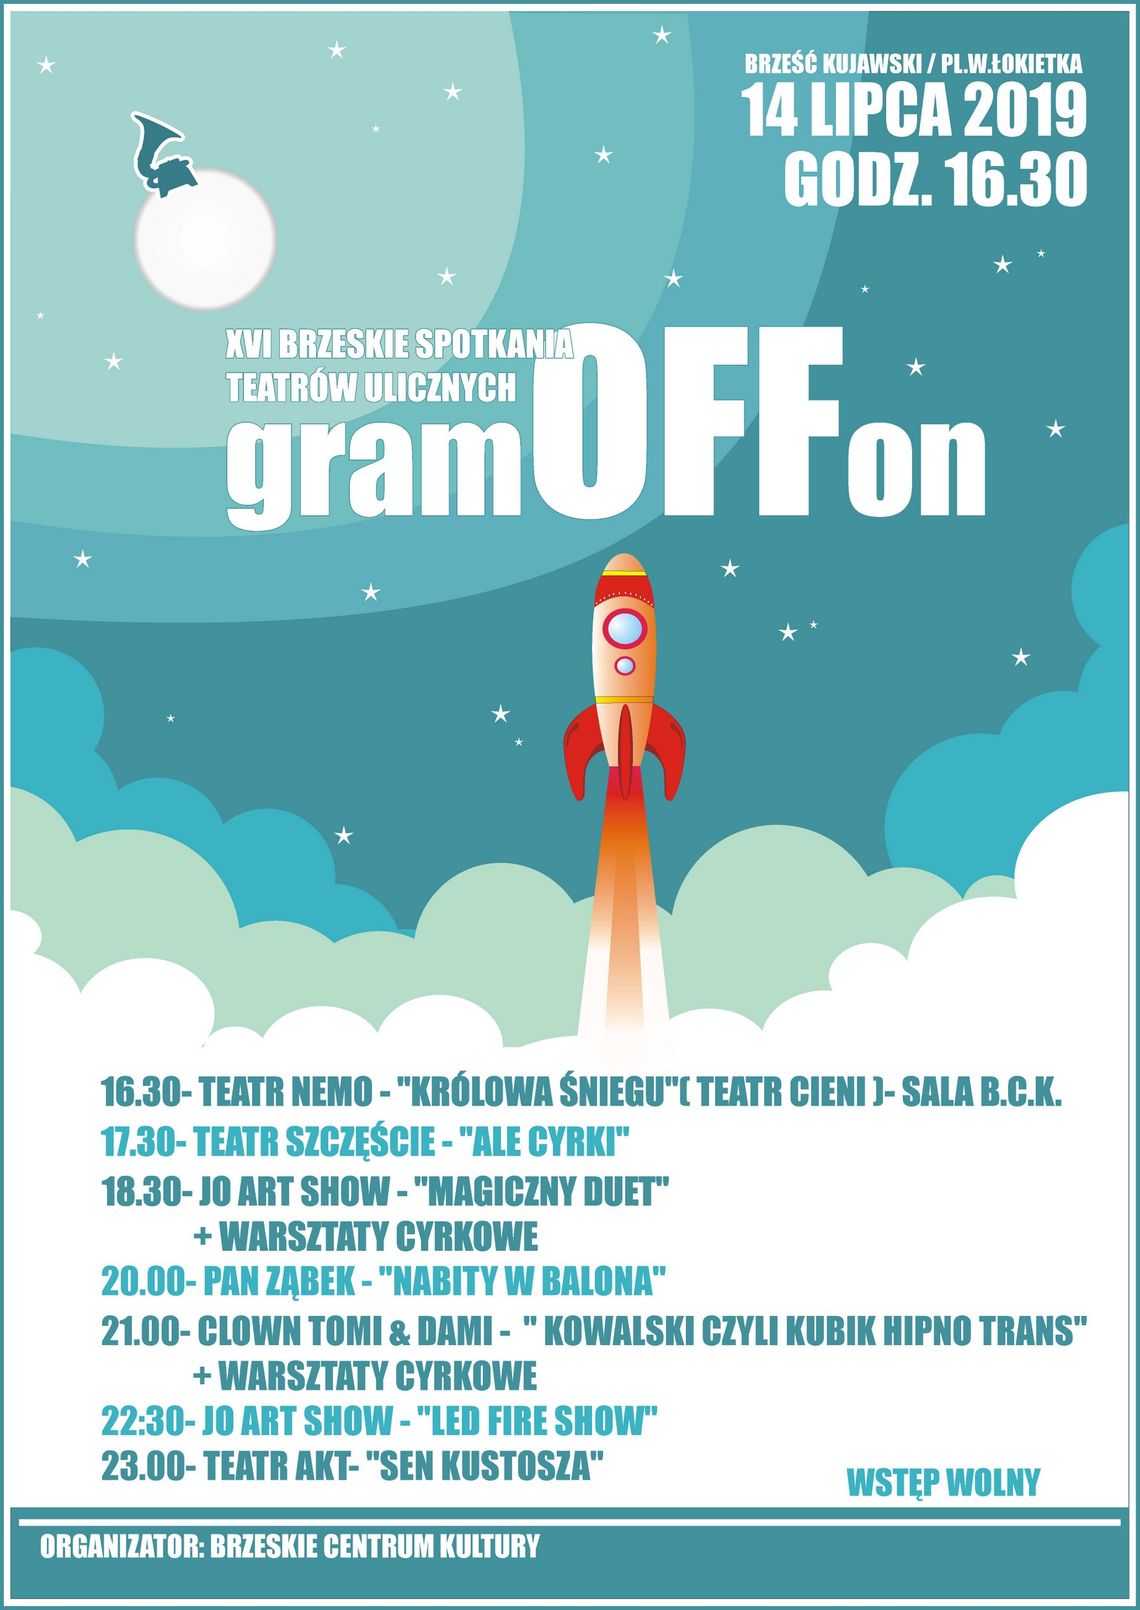 XVI Brzeskie Spotkania Teatrów Ulicznych "gramOFFon" już 14 lipca